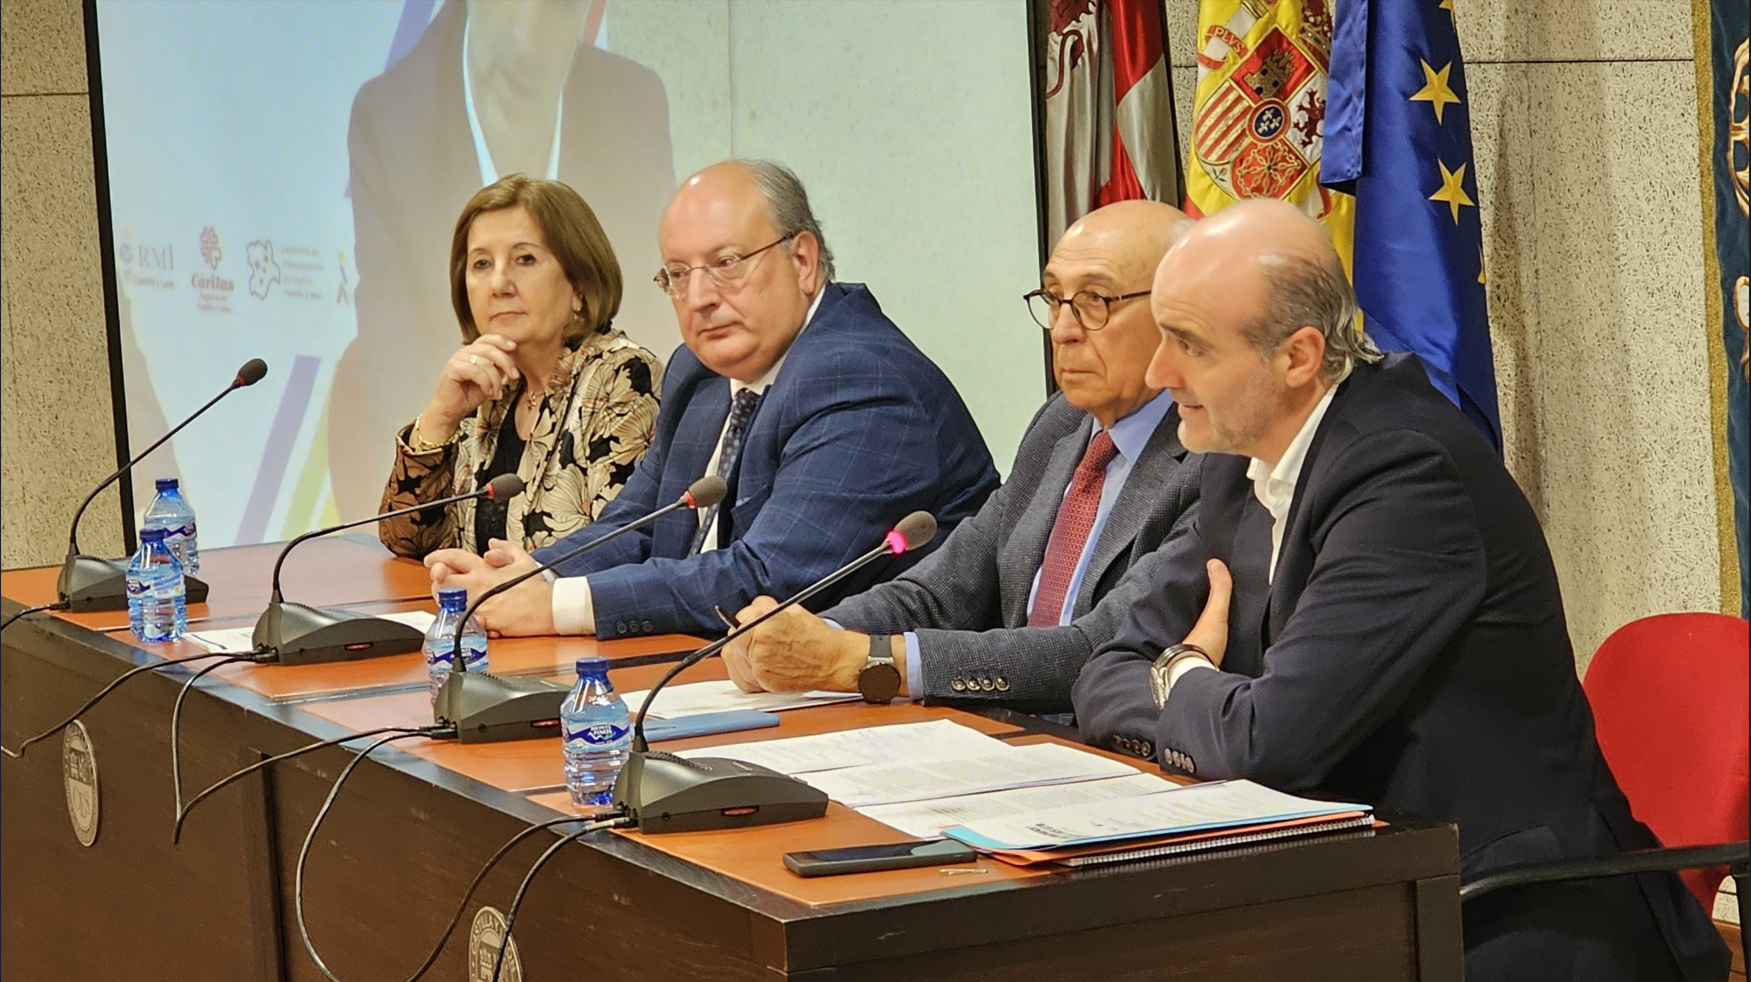 El Tercer Sector de Castilla y León se interesa por la Transparencia de sus entidades